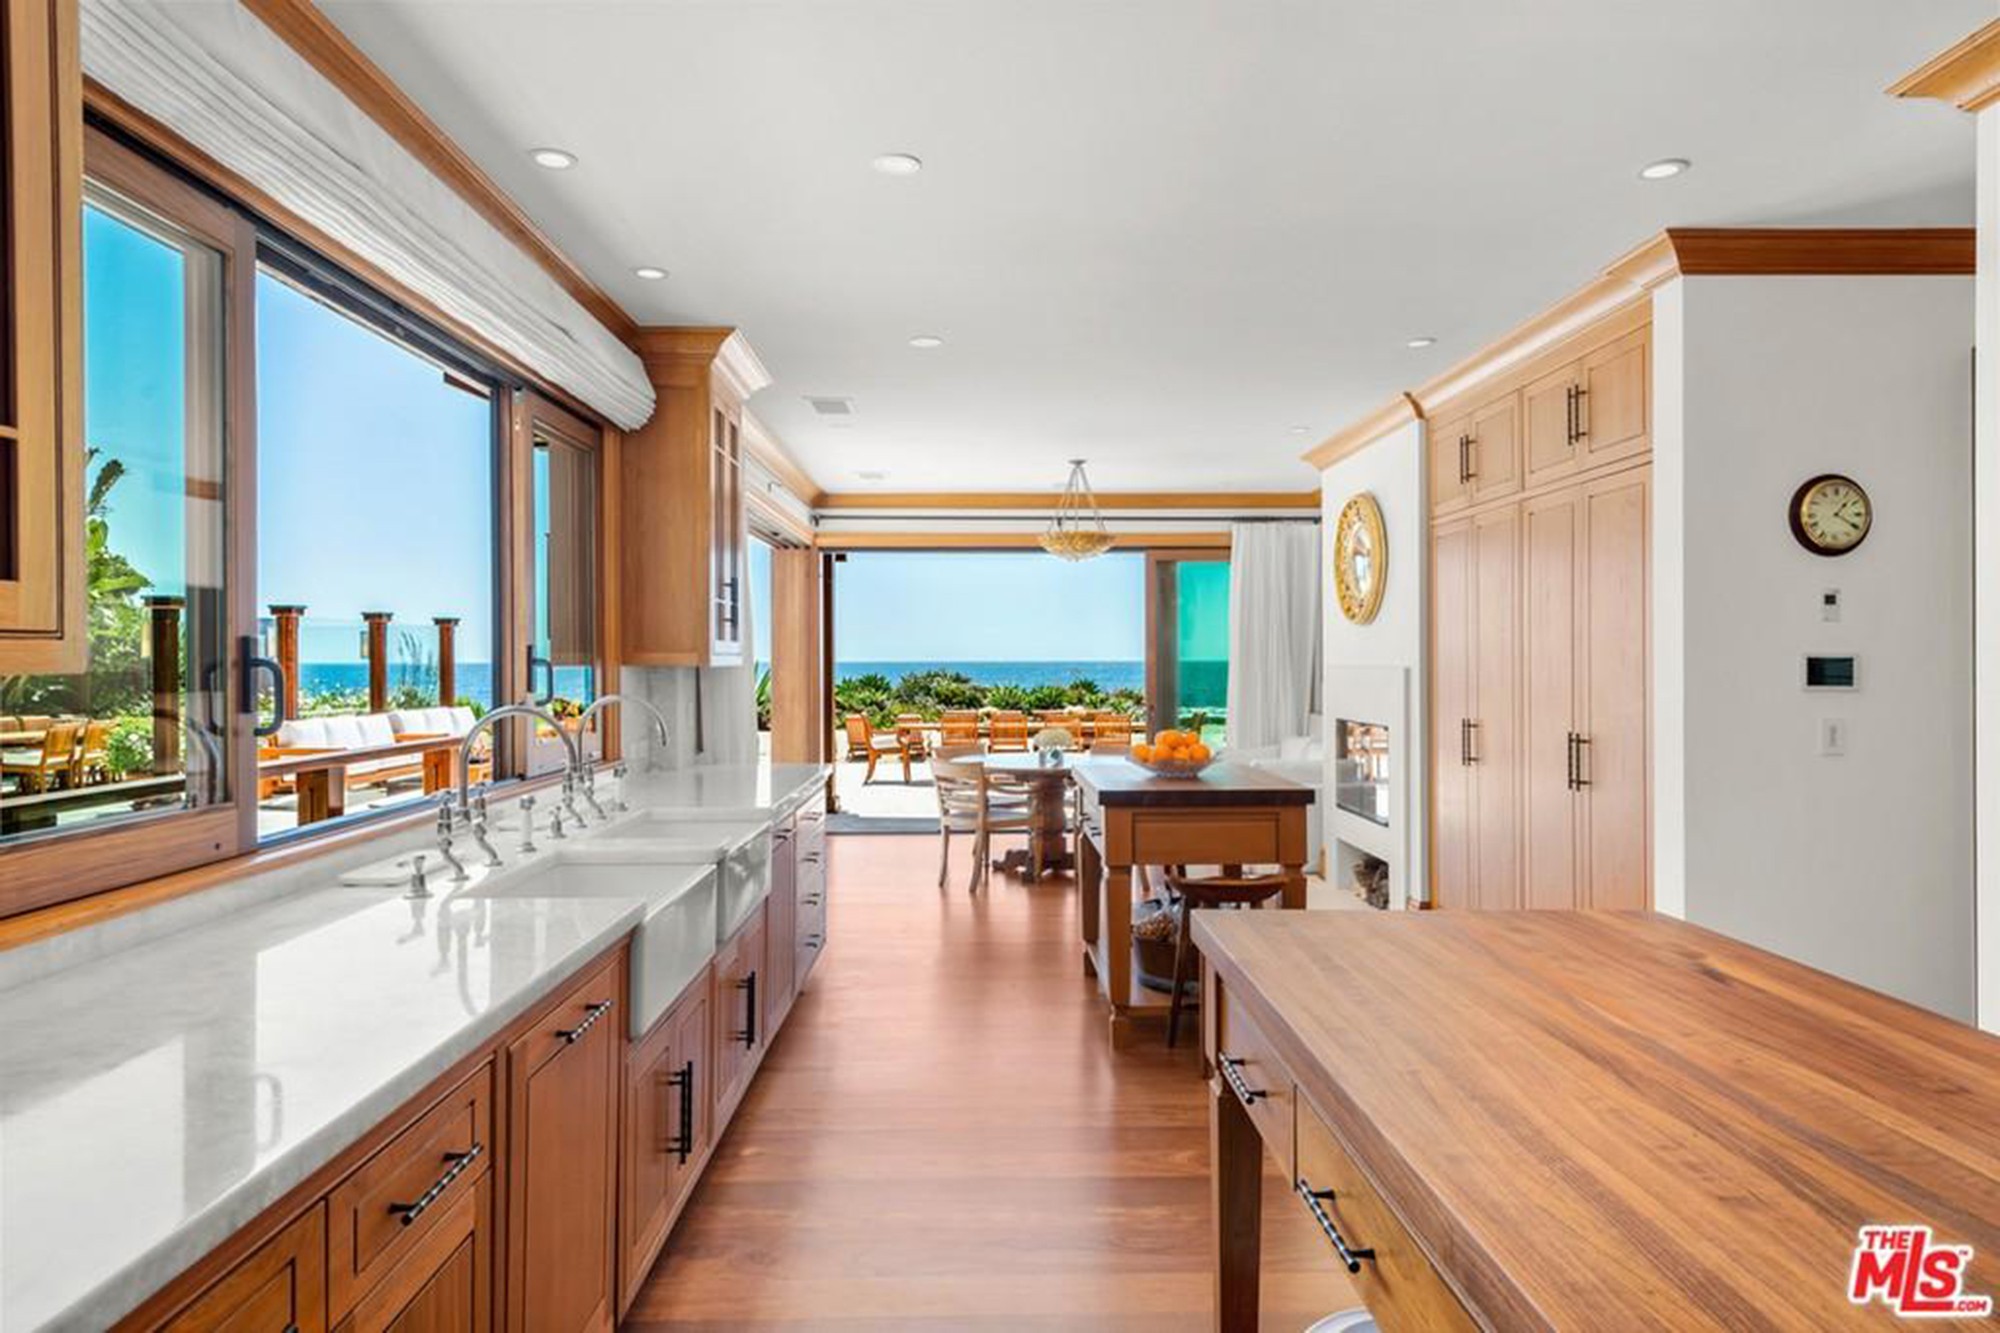 Pierce Brosnan's $100 million Malibu home. (Realtor.com)  (Foto: Reprodução)